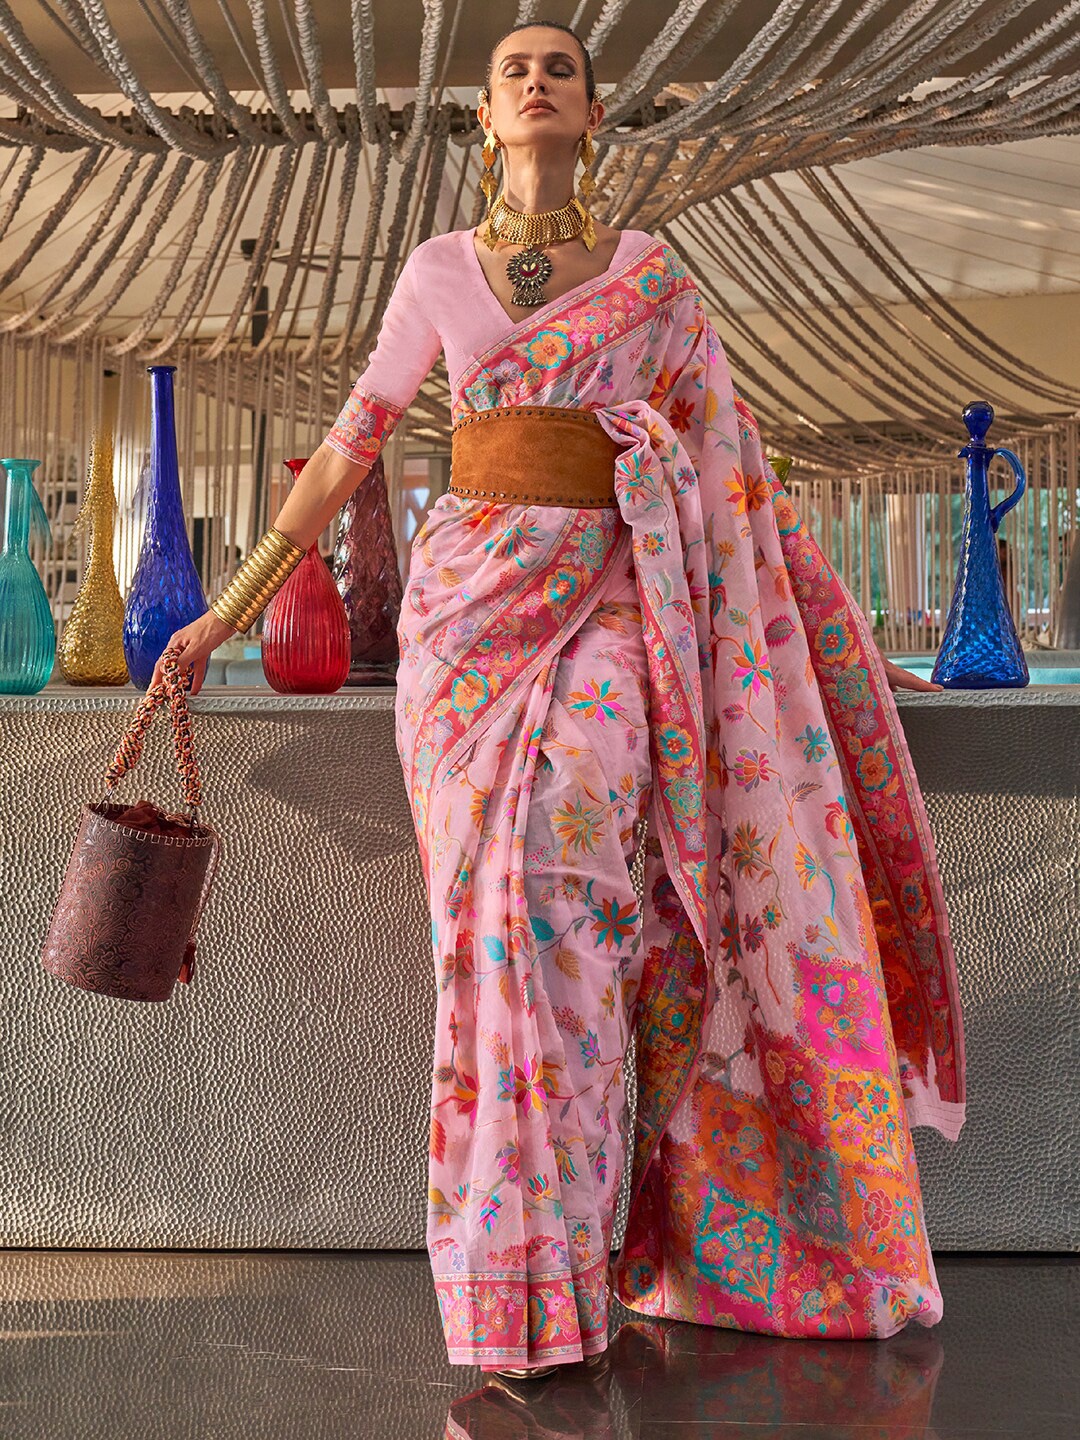 

Mitera Floral Printed Banarasi Saree, Pink